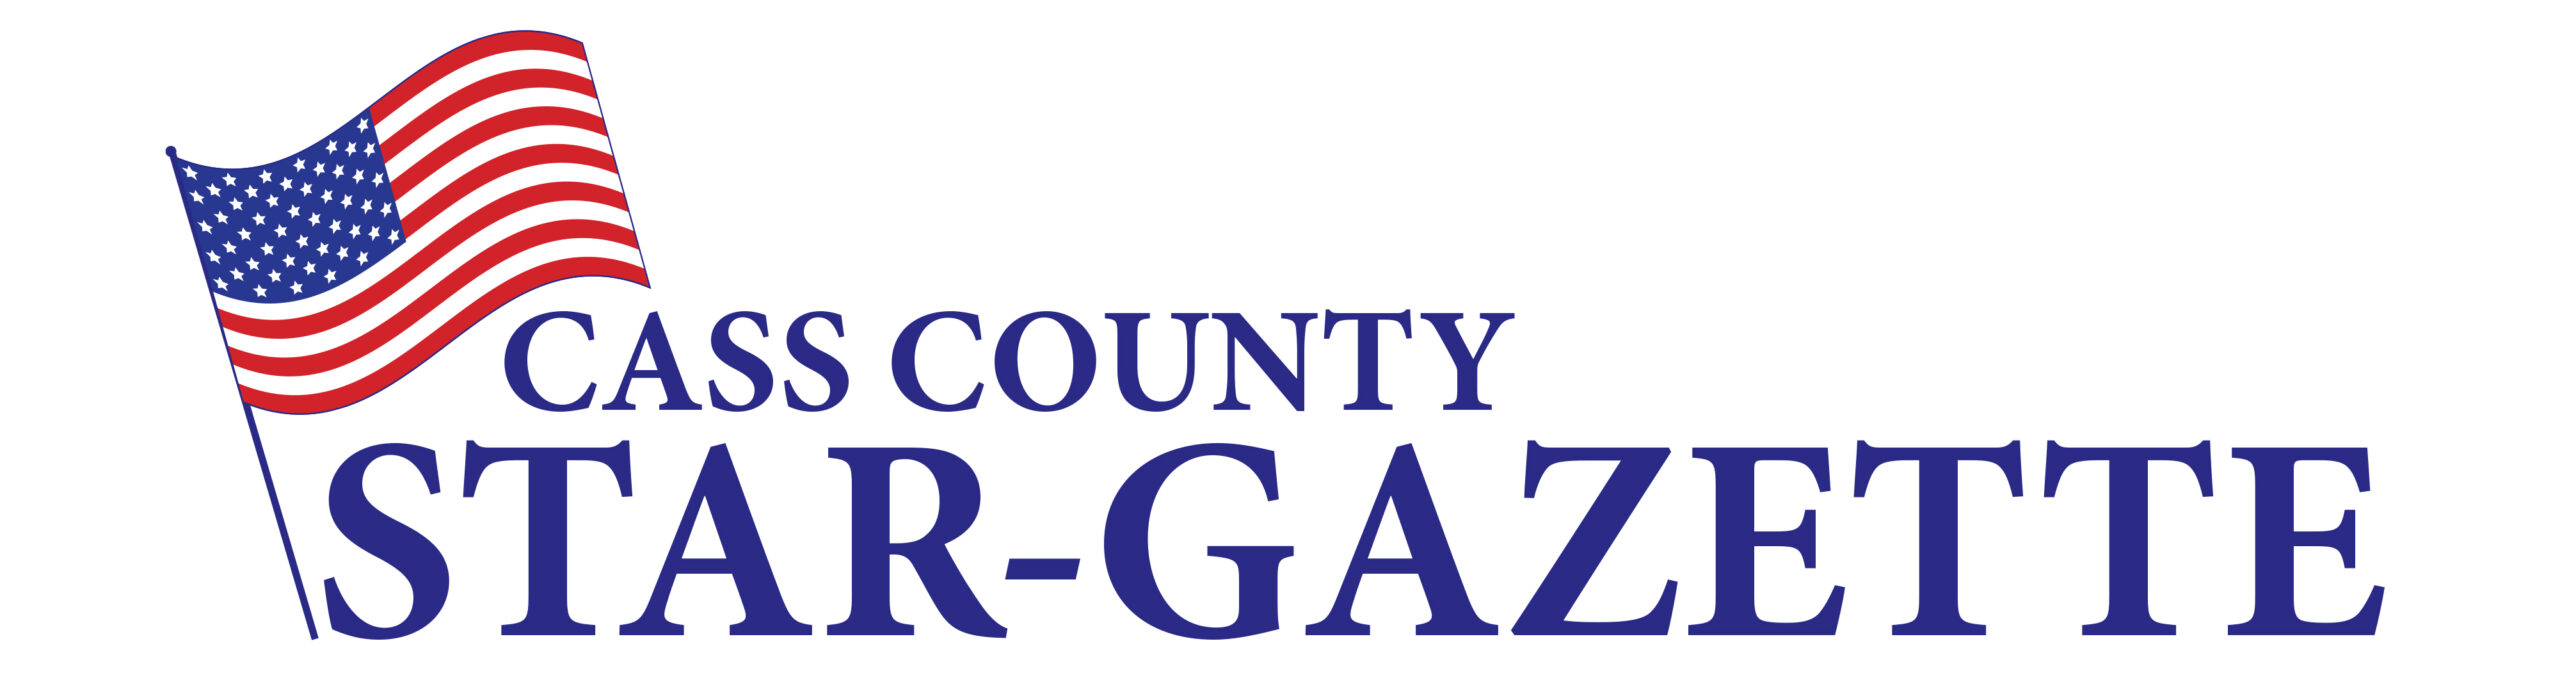 Cass County Star-Gazette